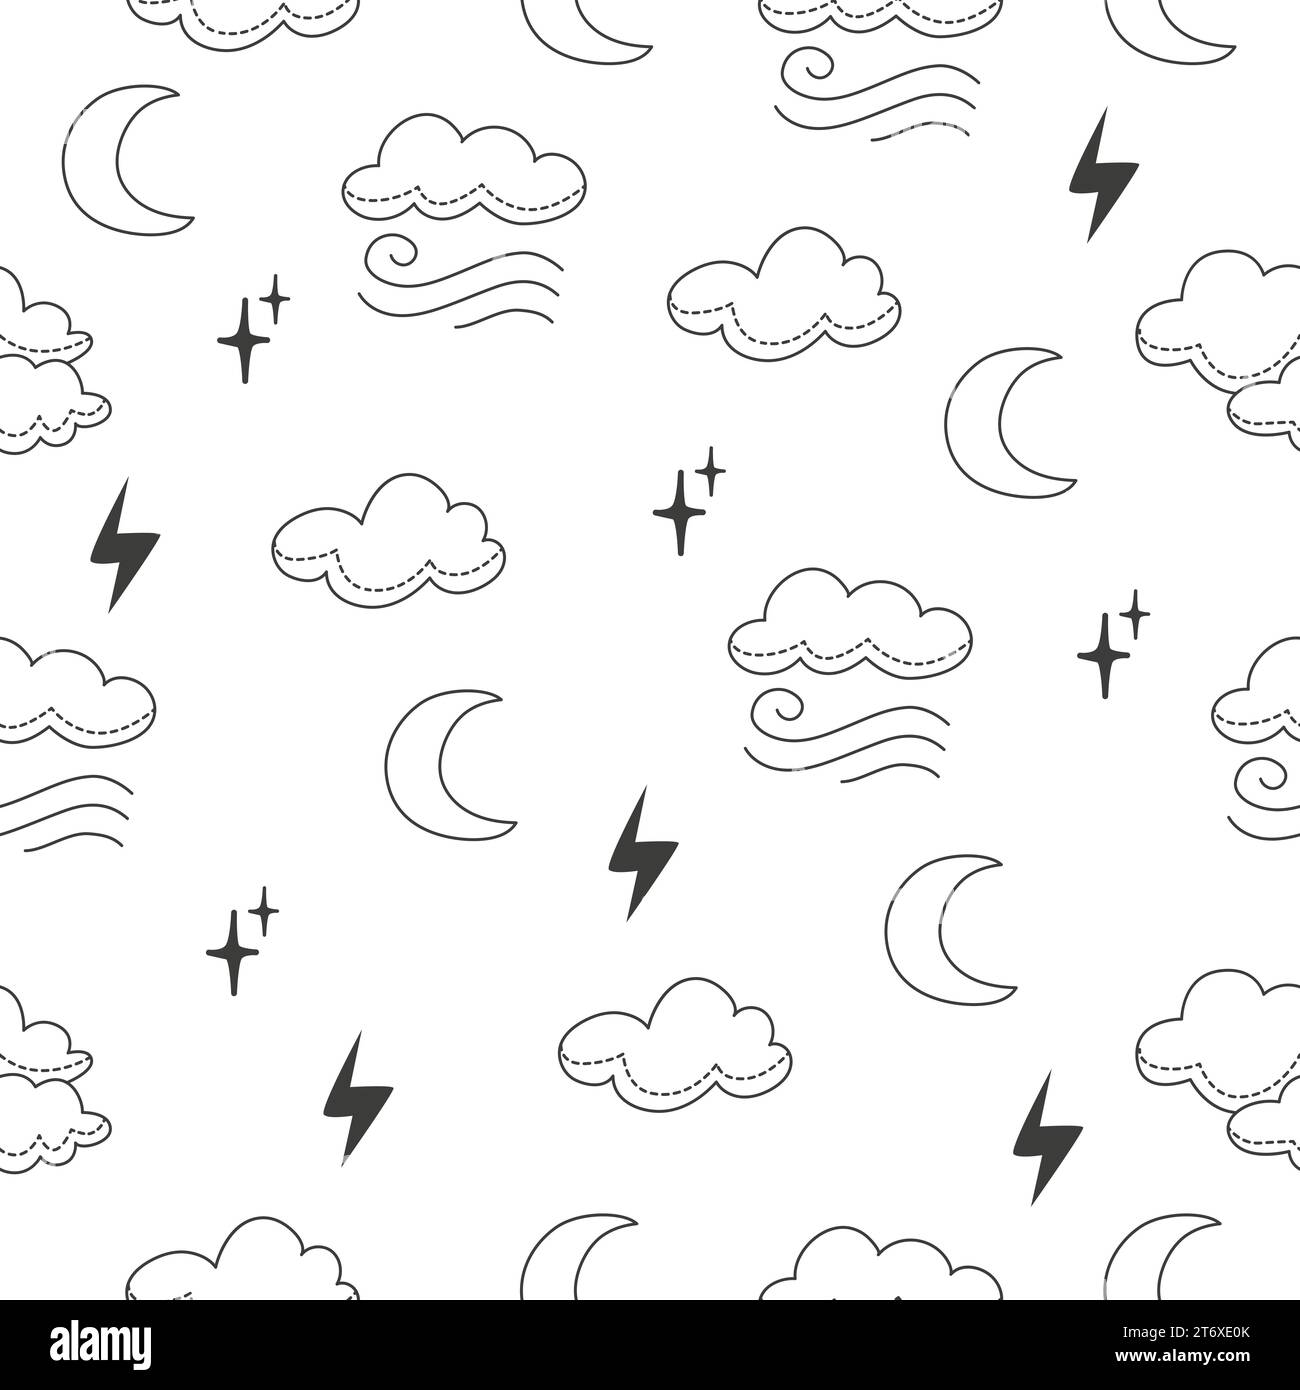 Wolken kritzeln nahtloses Muster. Linienwolke und Mond, Kinderzimmer Vorlage. Einfache Wettermuster, neoterischer saisonaler Vektor Stock Vektor